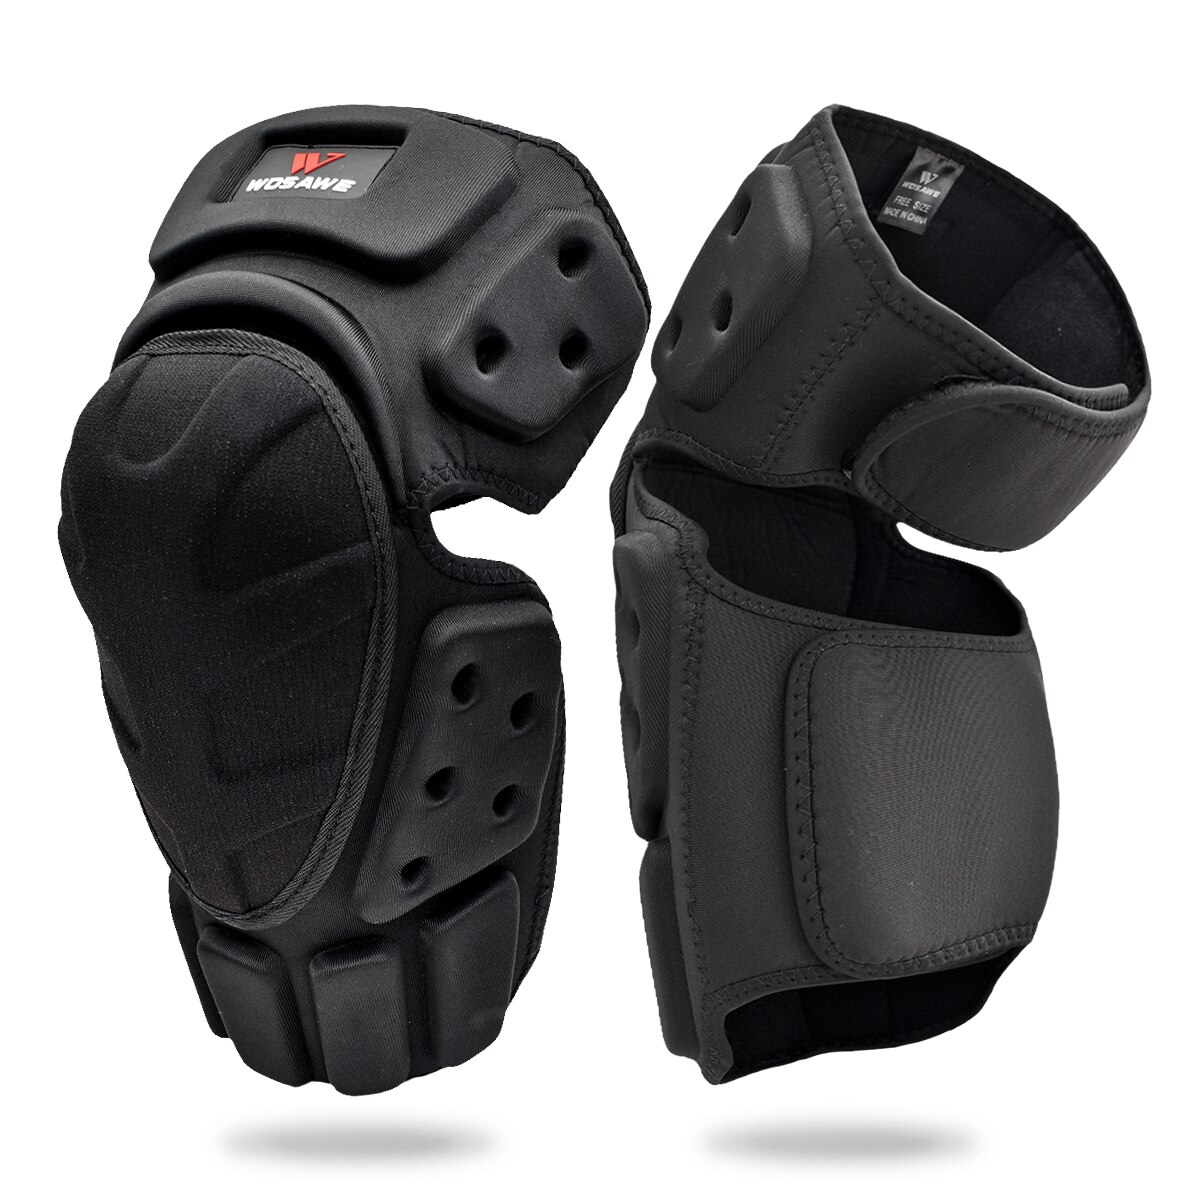 Wosawe motorcykel knæbeskytter motocross knæbøjle støtte skinnebenbeskyttelse knæpude benvarmer skøjteløb skateboard knæpude: Bc332